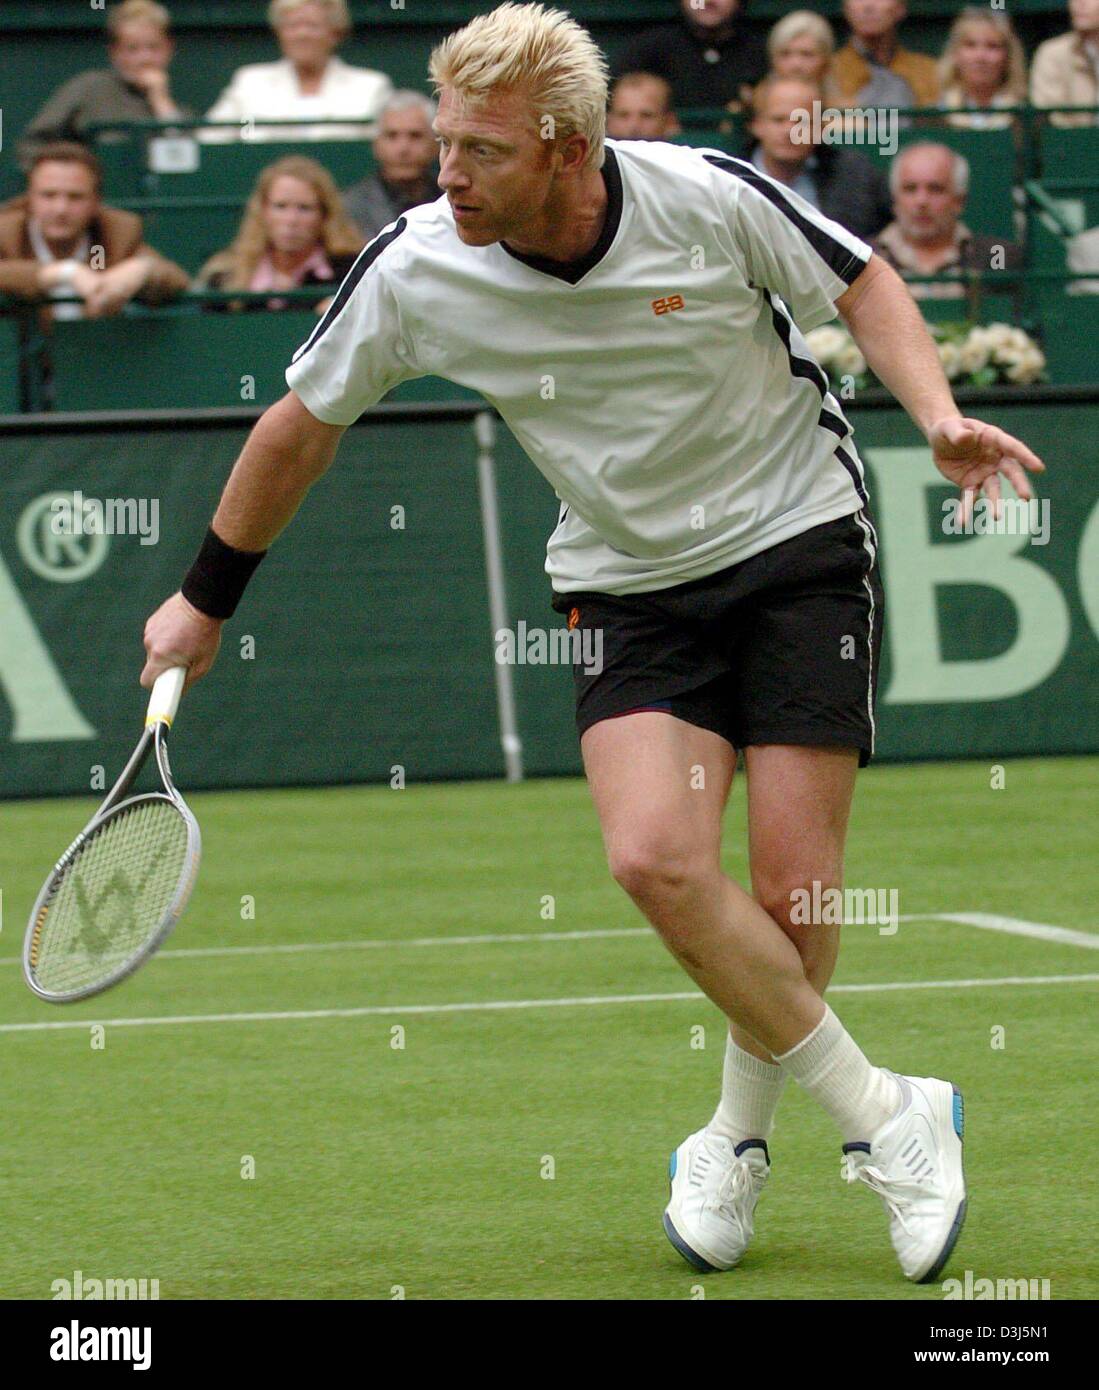 (Dpa) - ehemalige deutsche Tennisprofi Boris Becker eine Rückhand spielt während der Show-match gegen Mats Wilander, das ATP-Tennisturnier in Halle, Deutschland, 4. Juni 2004 öffnet. Stockfoto